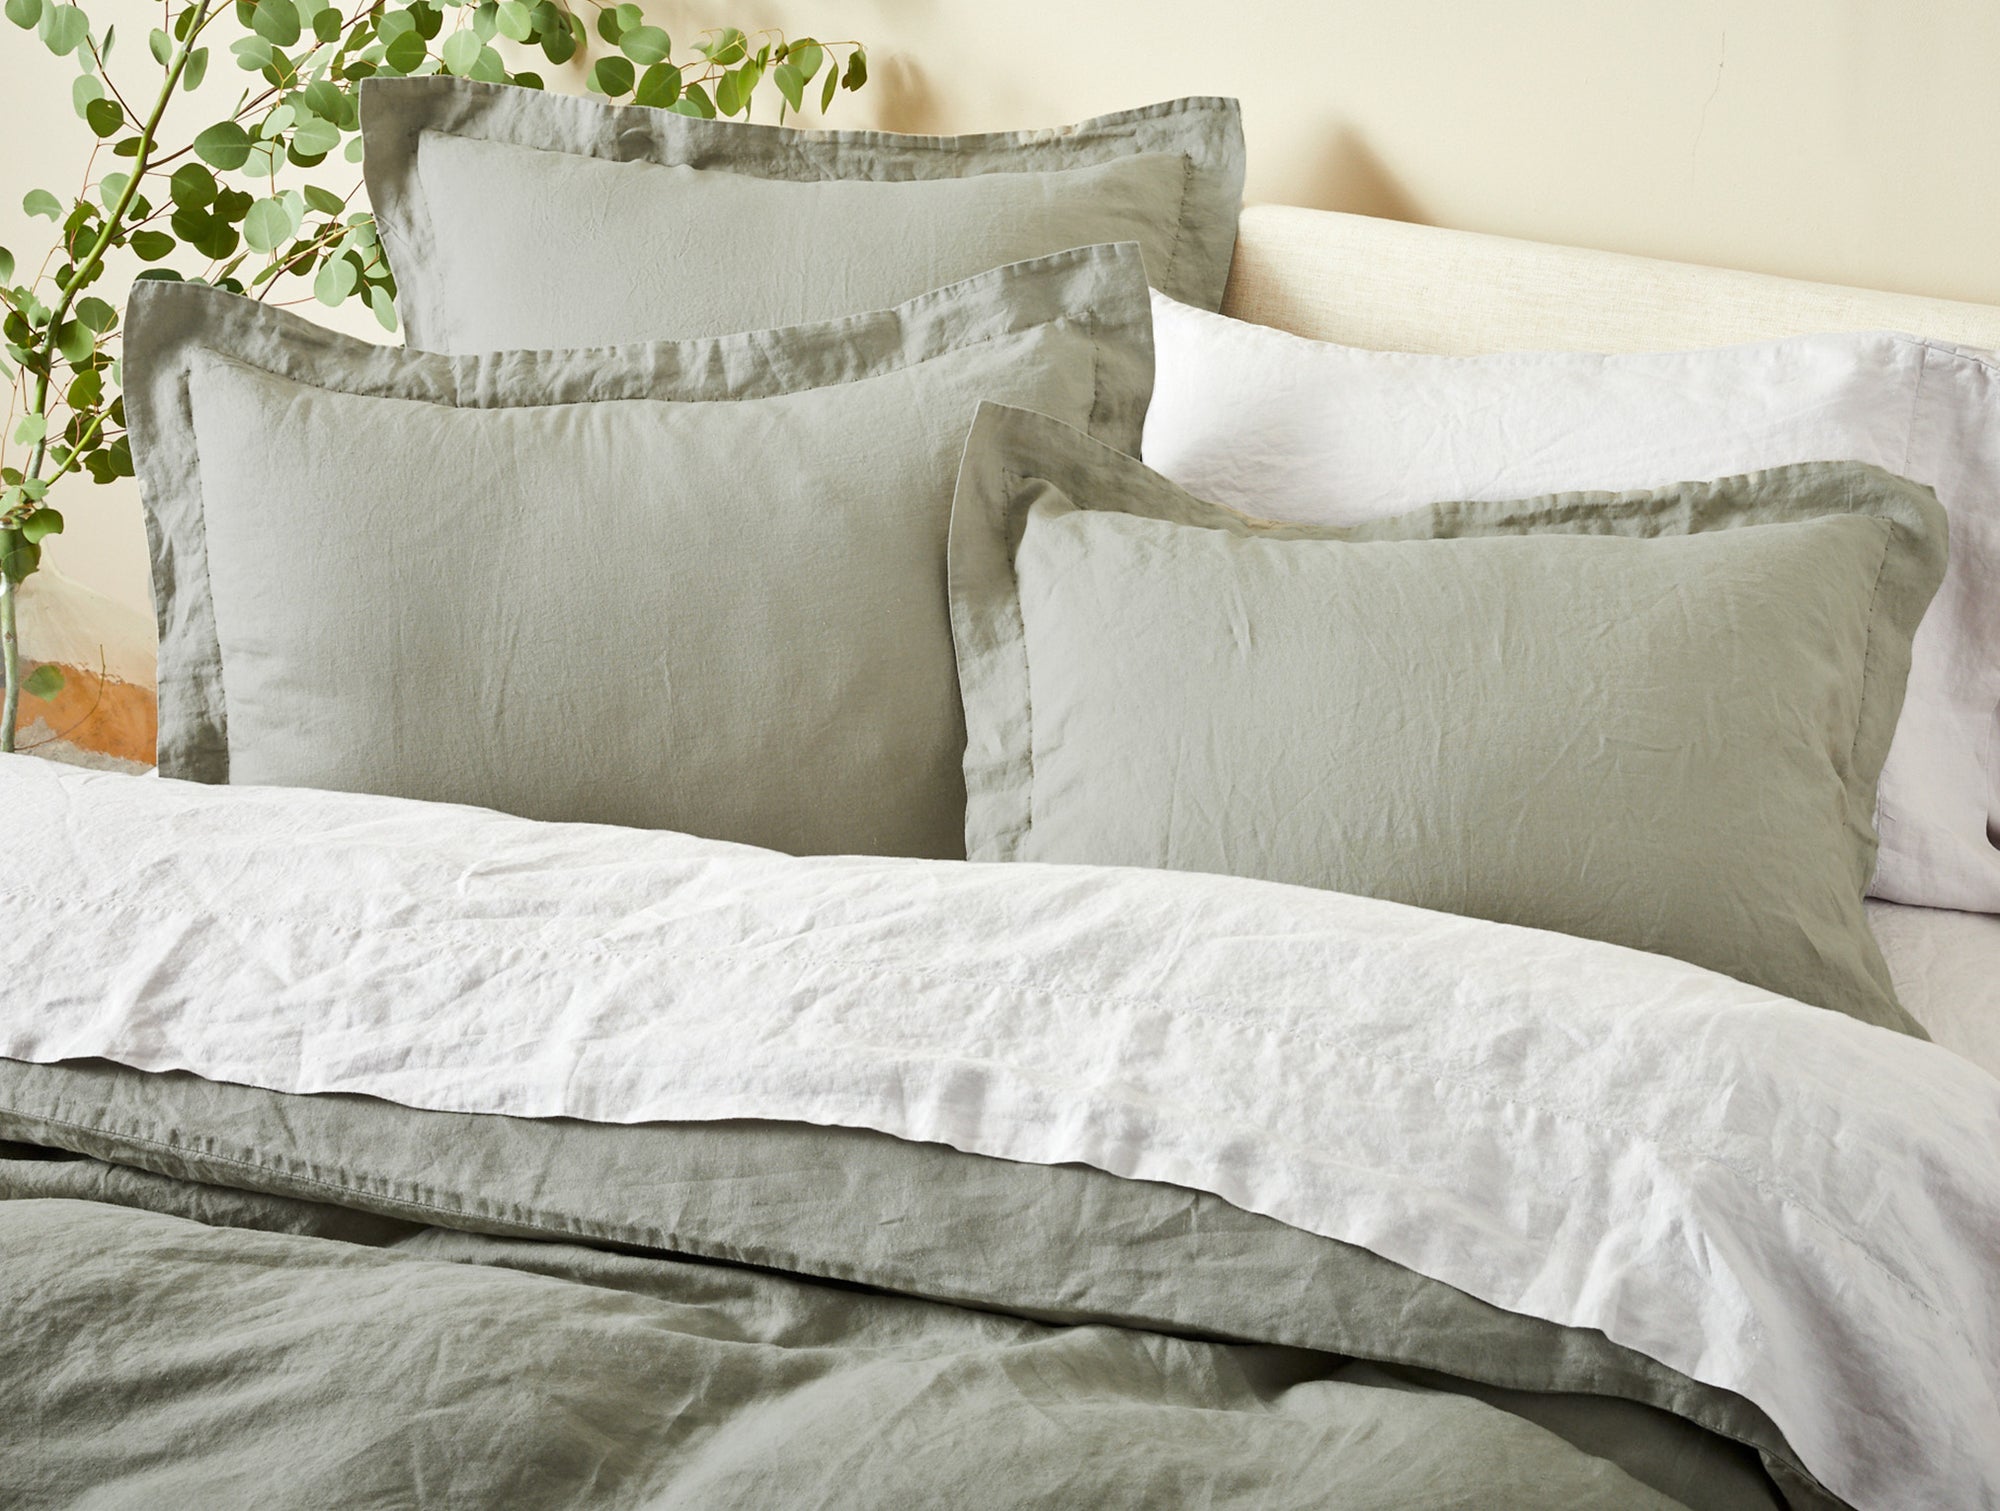 Organic Relaxed Linen Sheets 